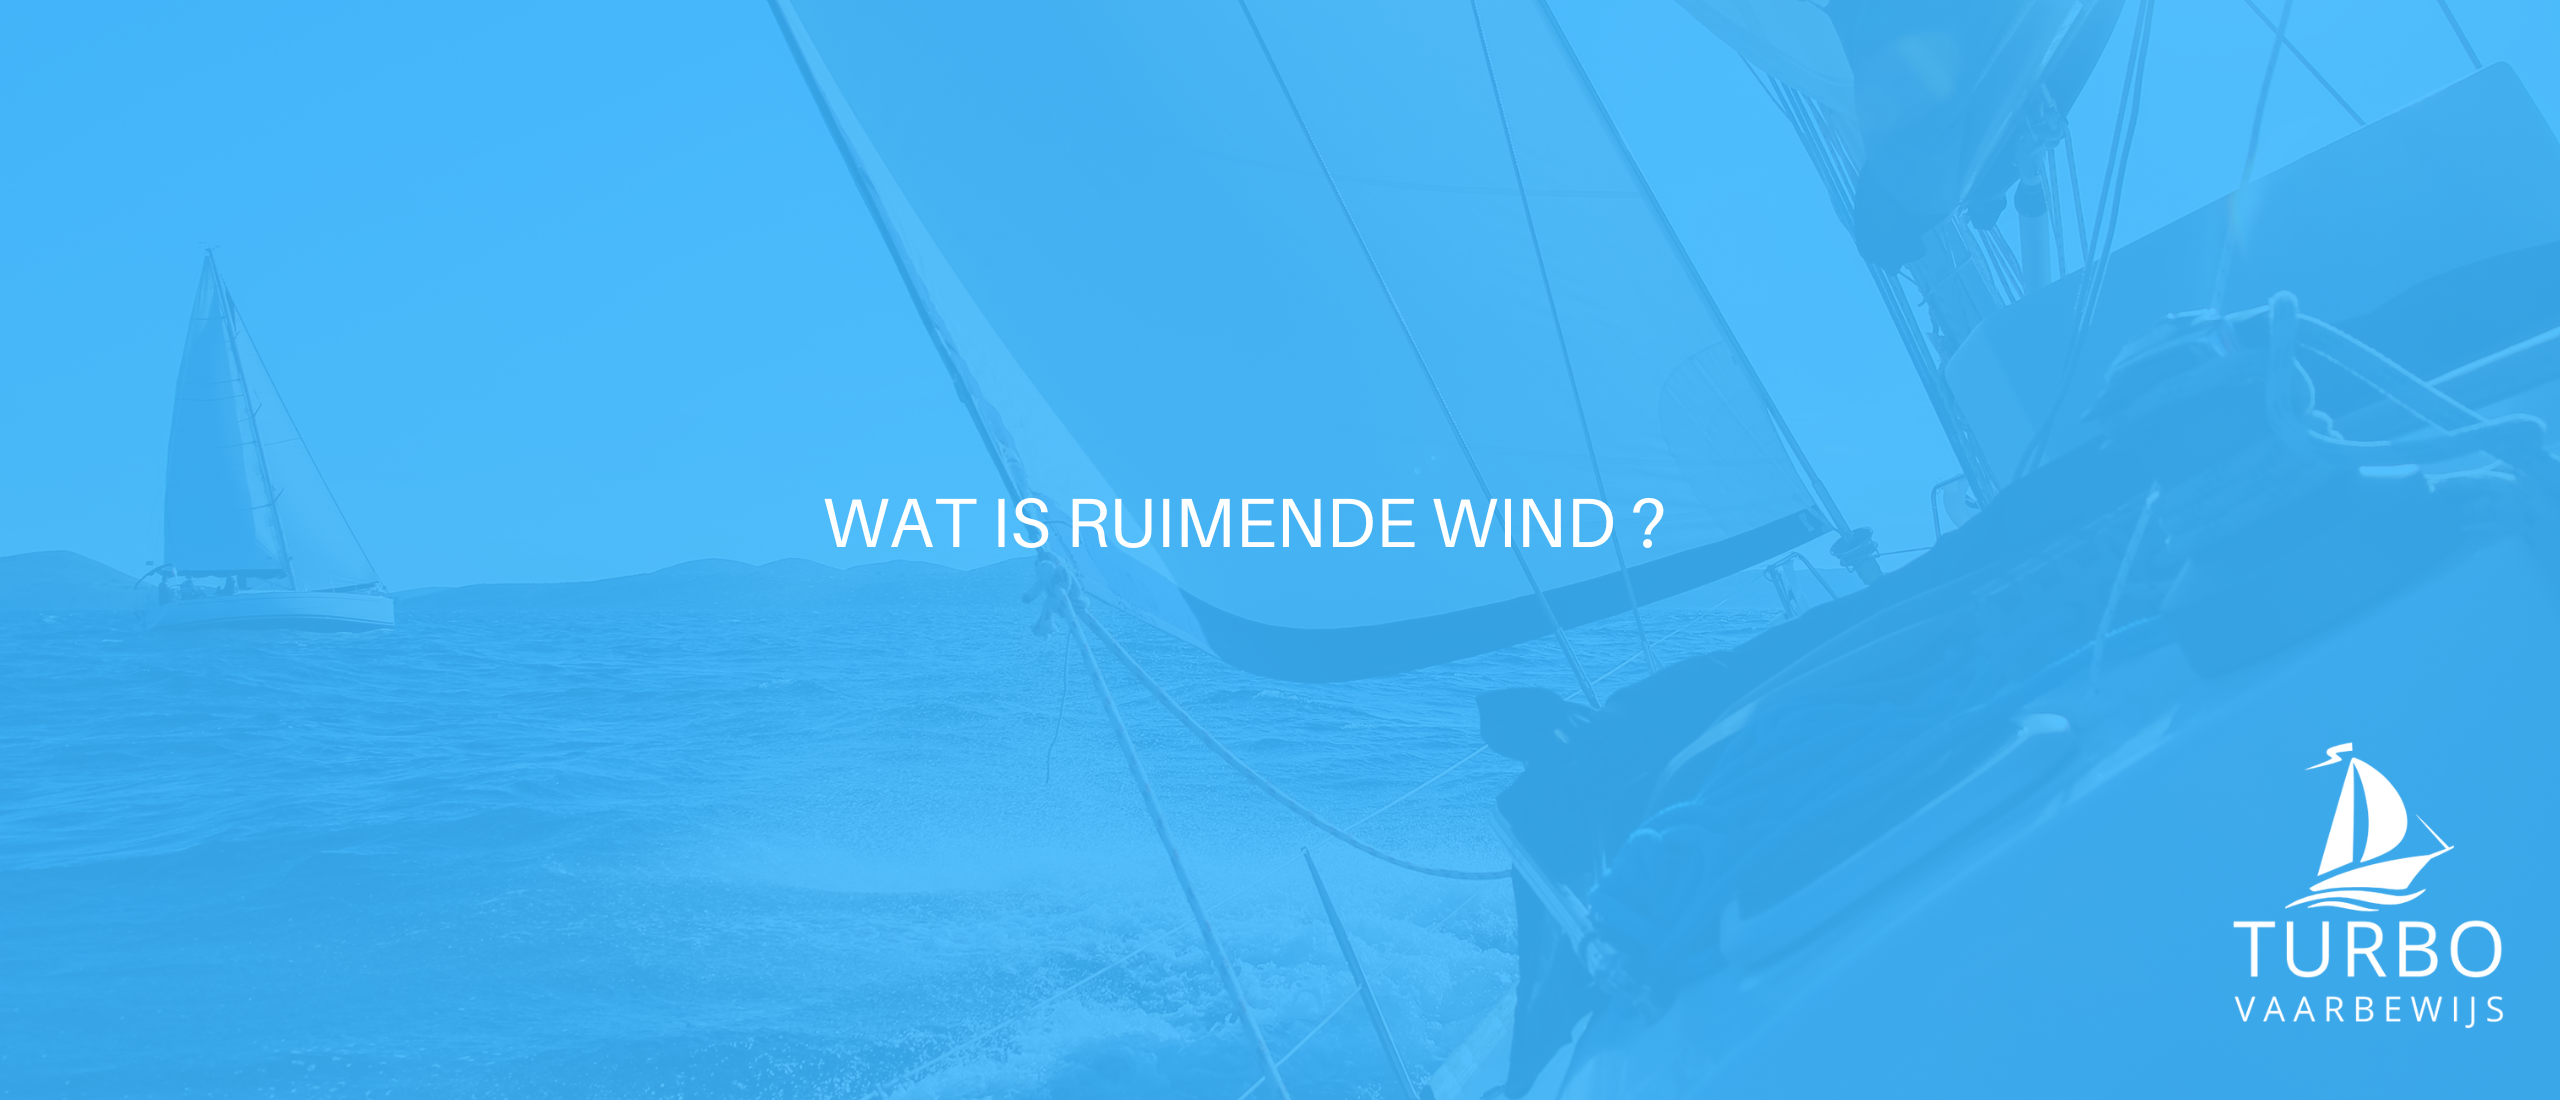 Wat is ruimende wind?